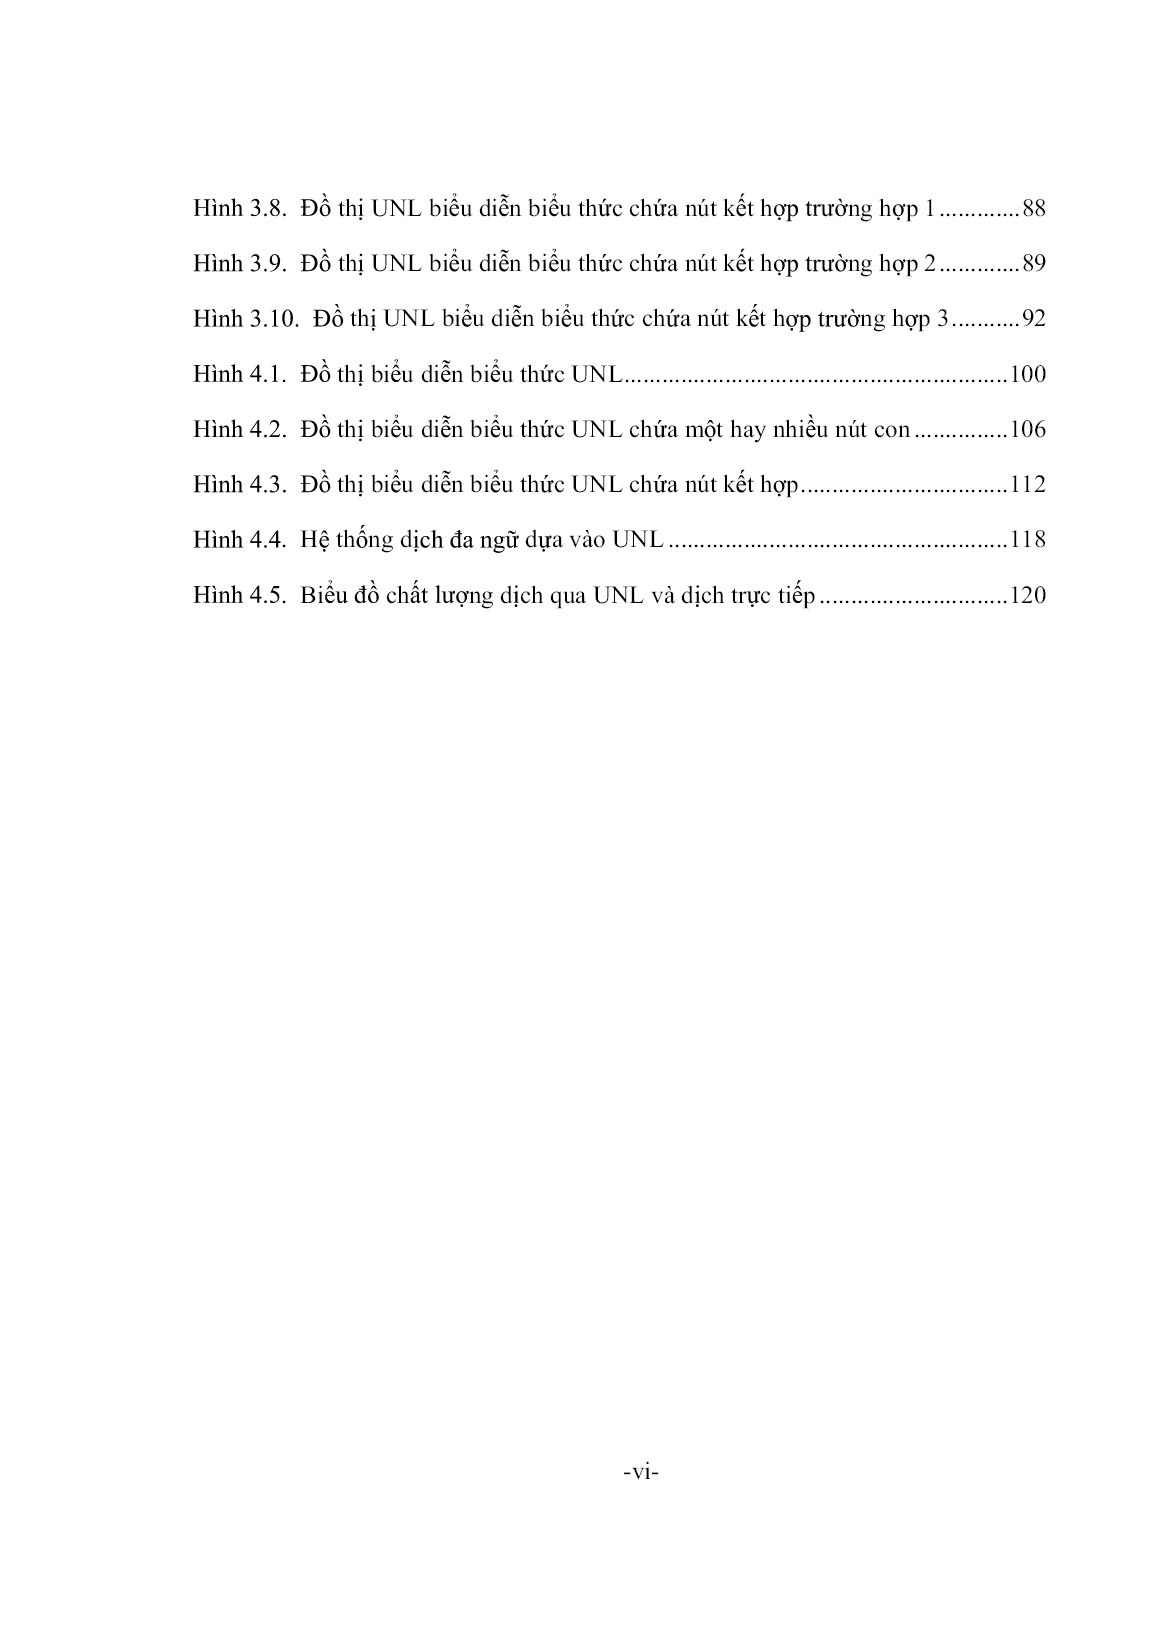 Luận án Sử dụng ngôn ngữ trục trong dịch đa ngữ trang 10